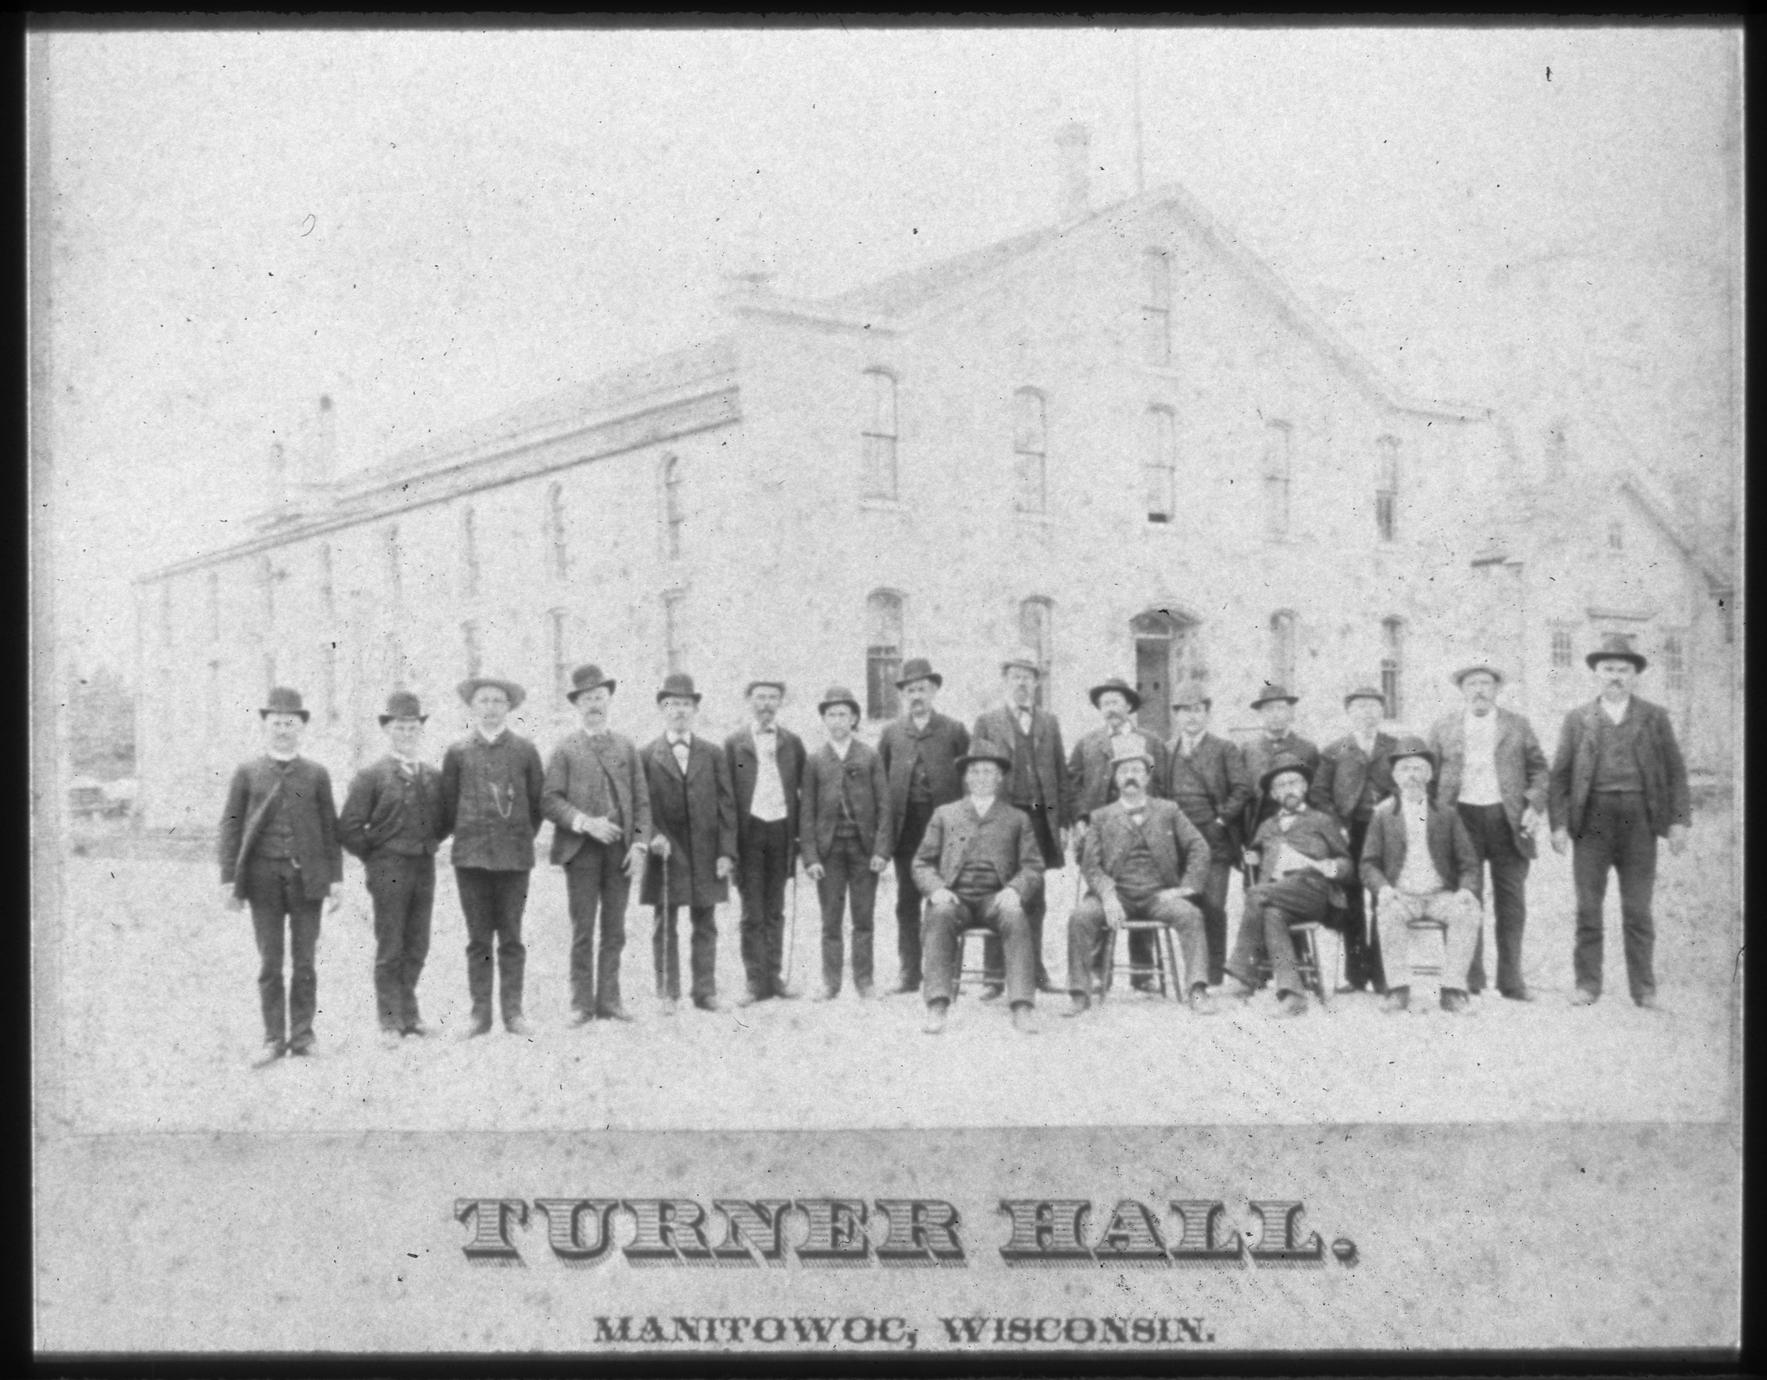 Turner Hall